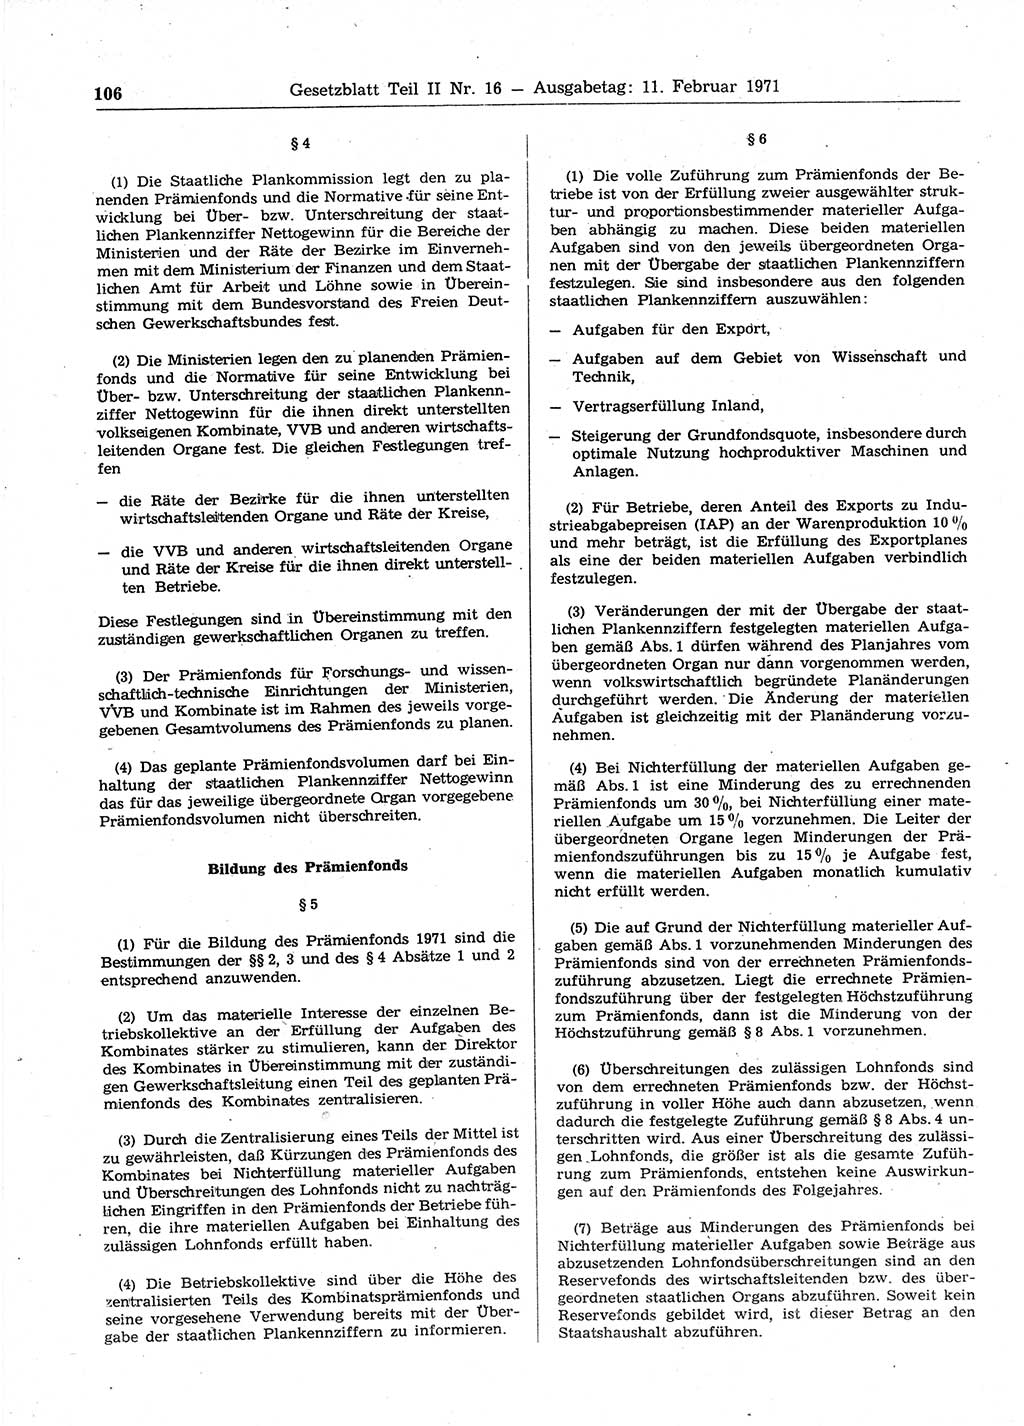 Gesetzblatt (GBl.) der Deutschen Demokratischen Republik (DDR) Teil ⅠⅠ 1971, Seite 106 (GBl. DDR ⅠⅠ 1971, S. 106)